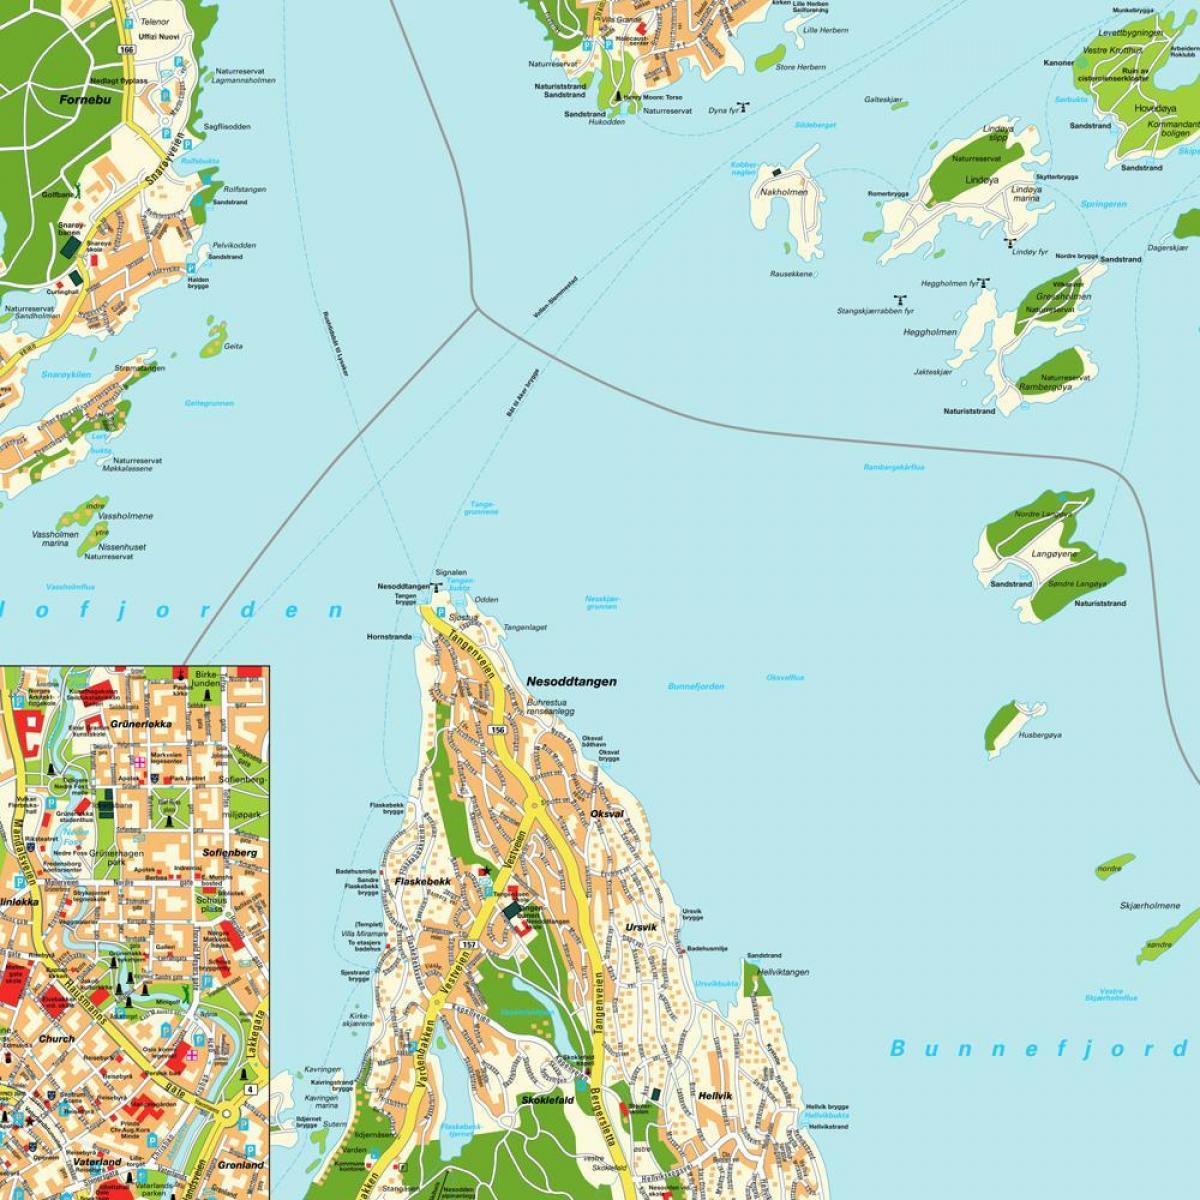 Օսլո, Նորվեգիա աշխարհի քարտեզի վրա